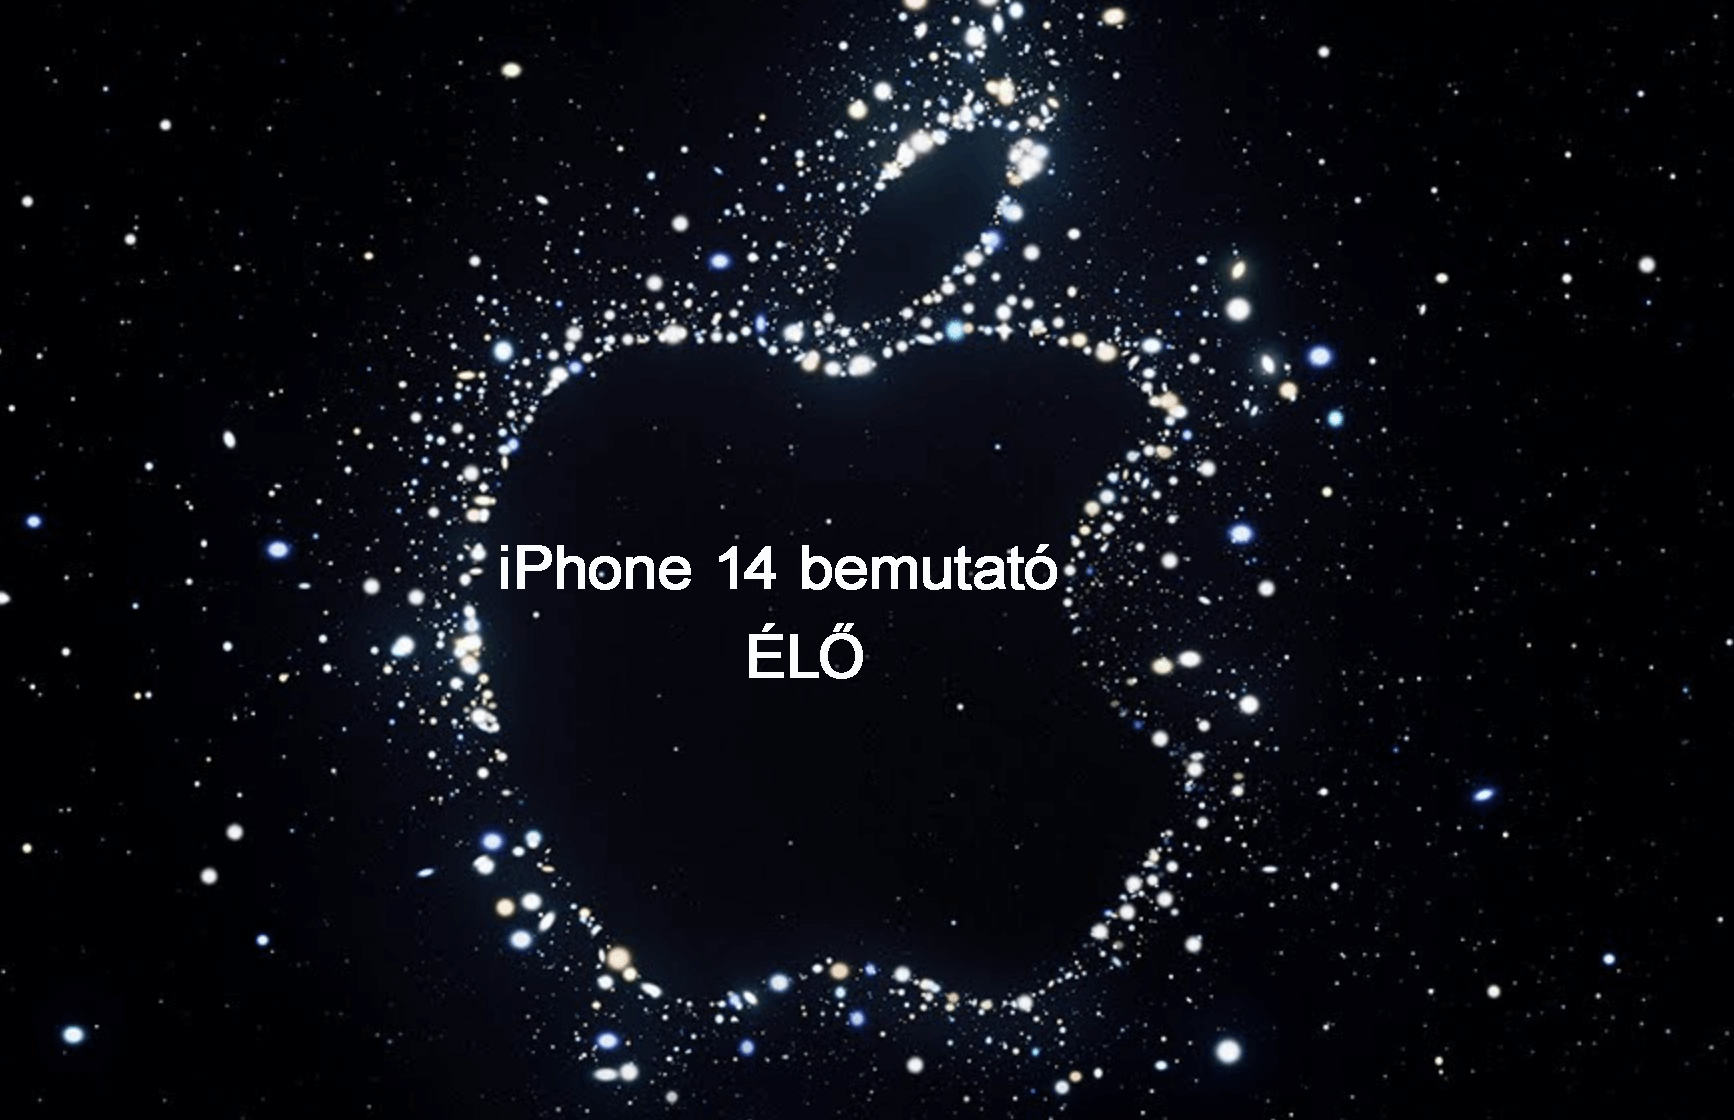 iPhone 14 bemutató ÉLŐ közvetítés a HasznaltAlmán